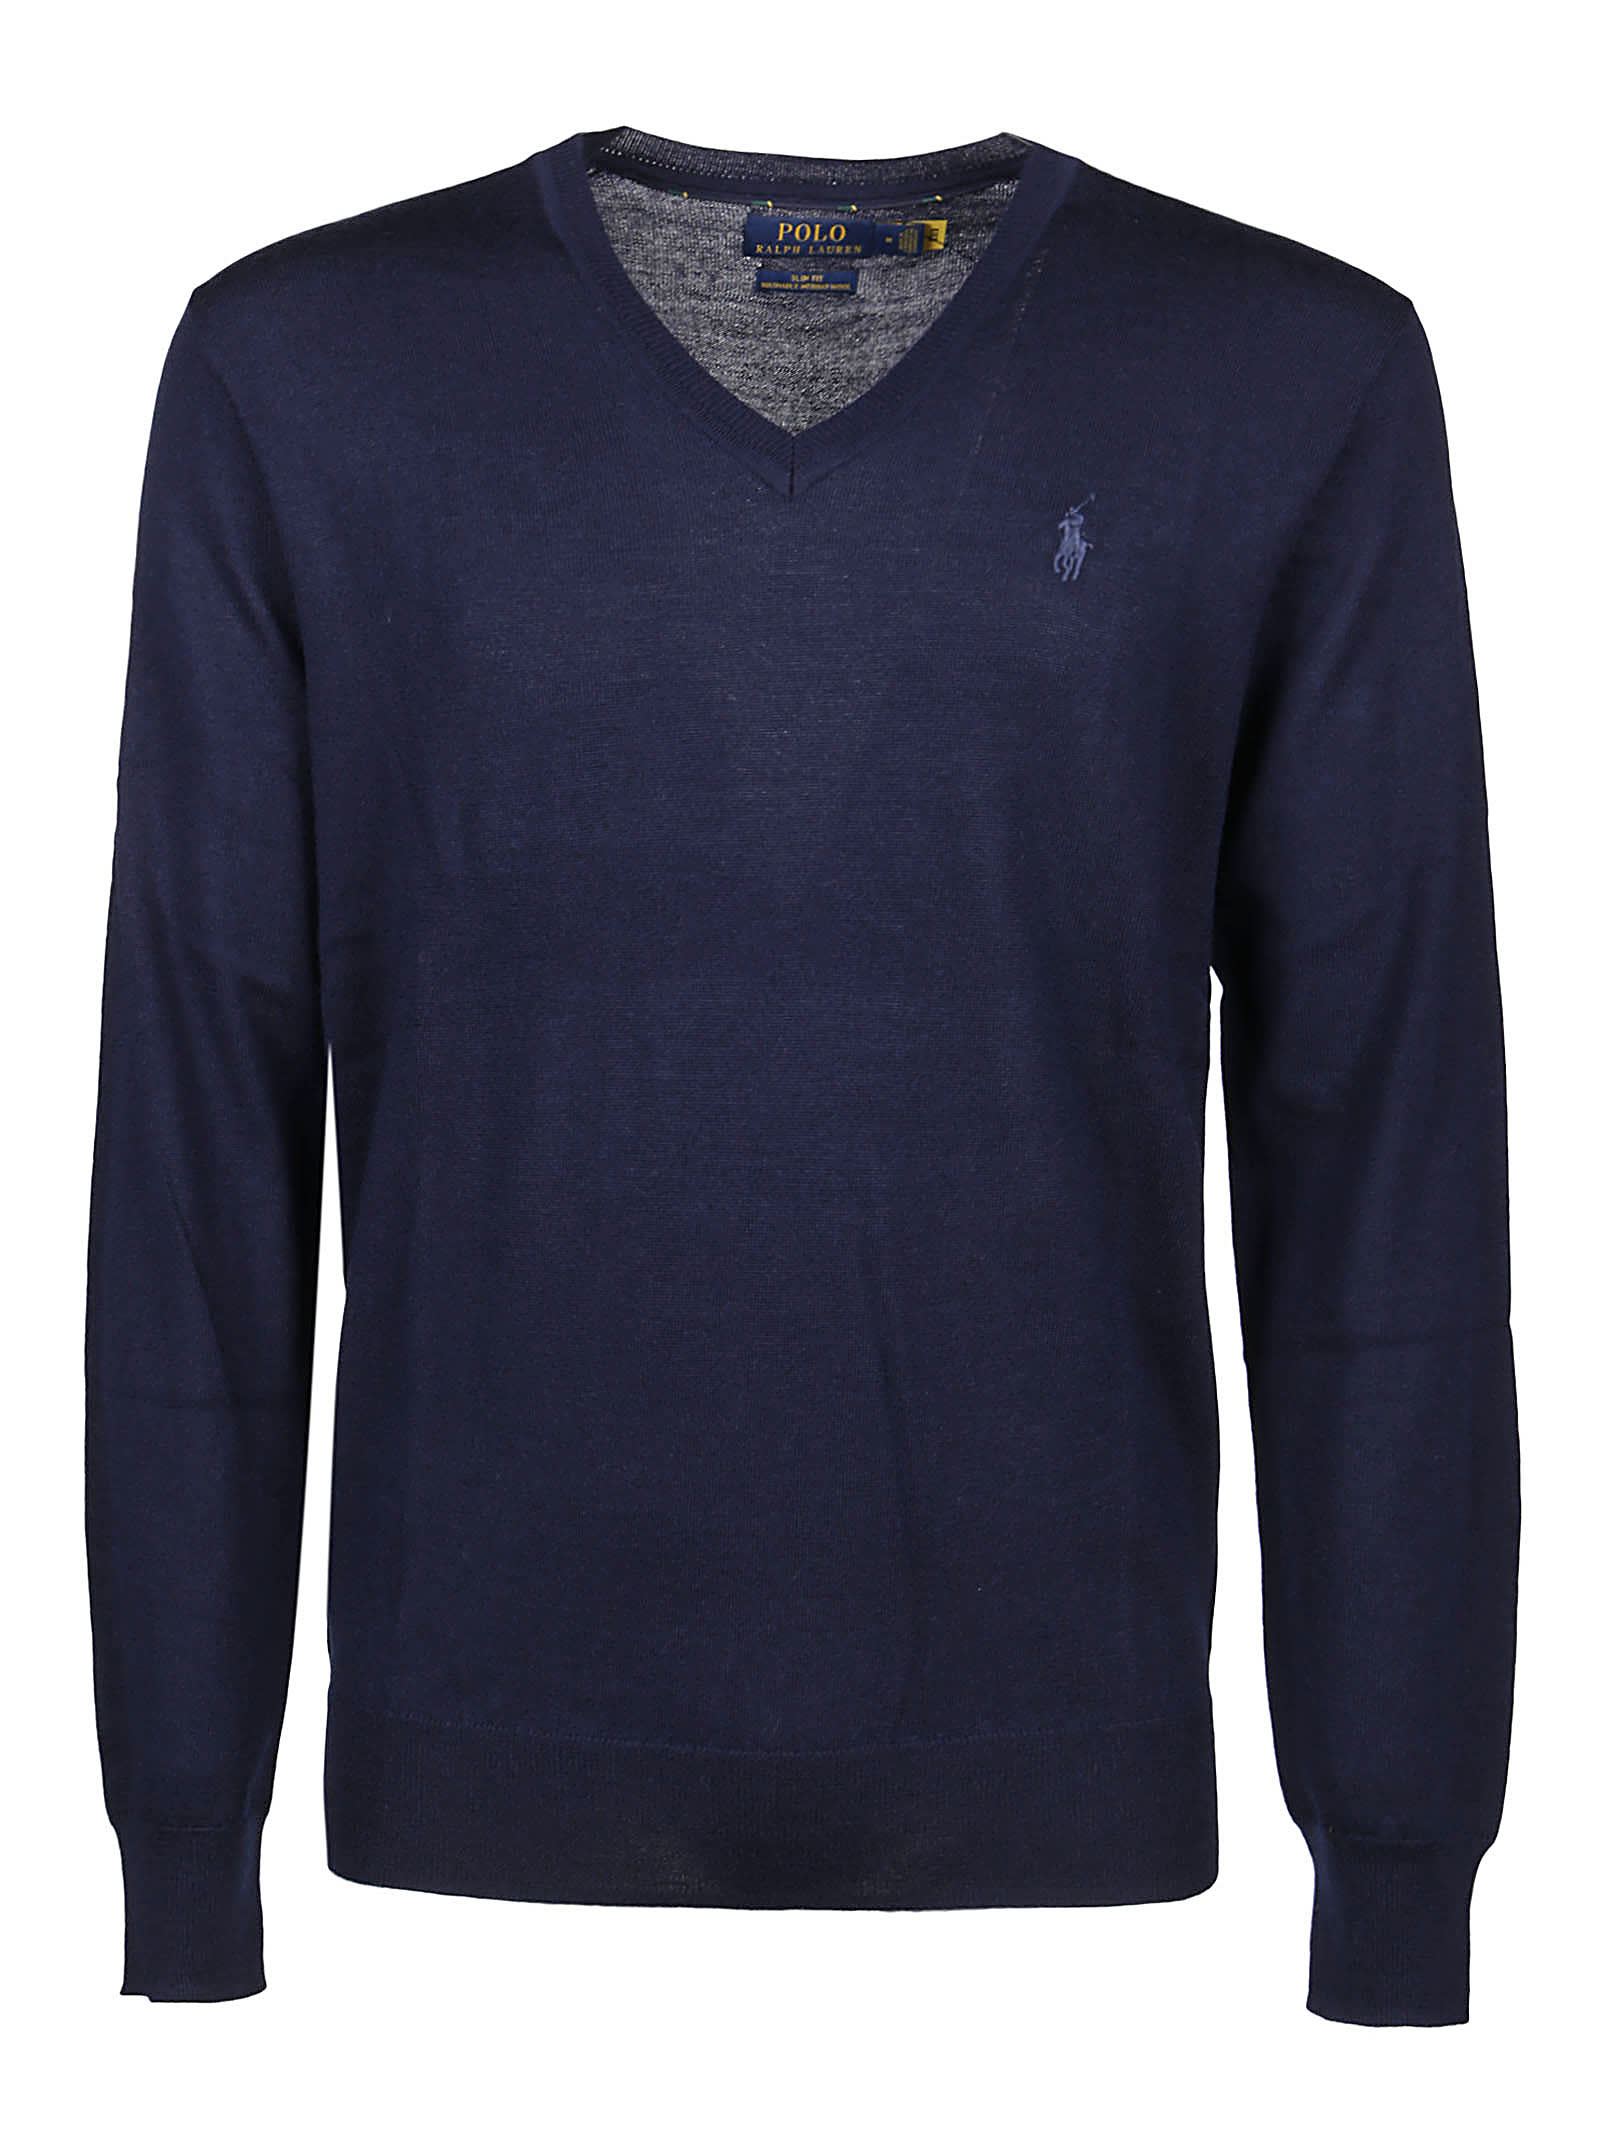 Ralph Lauren Long Sleeve Sweater